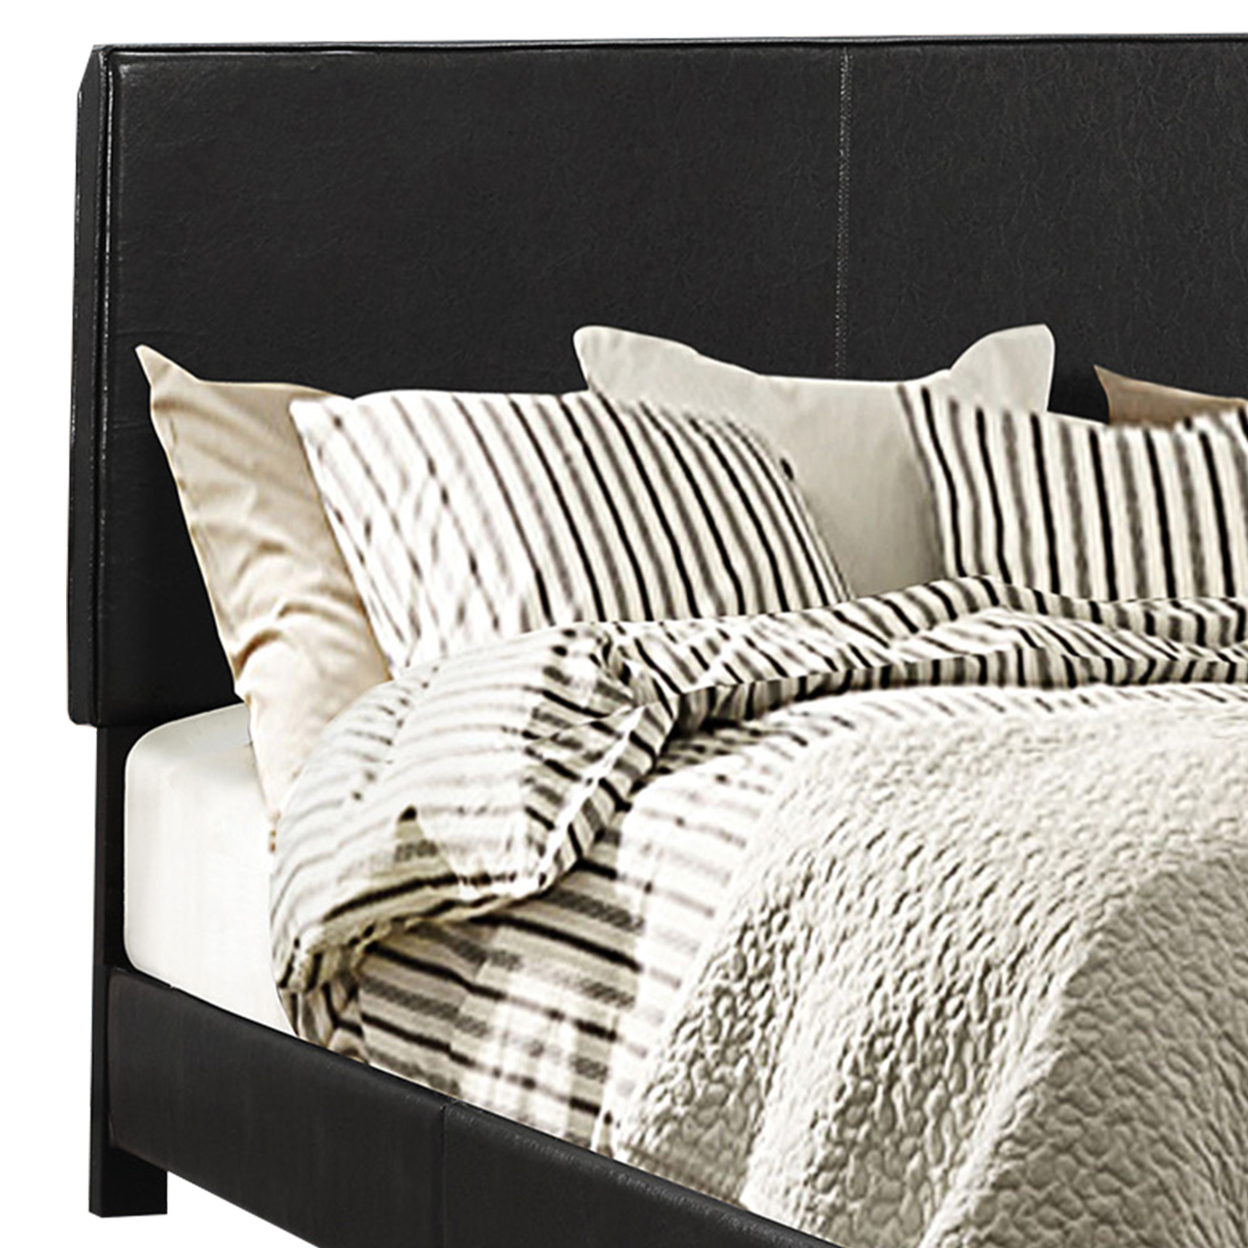 Leather Upholstered Queen Size Platform Bed, Black- Saltoro Sherpi